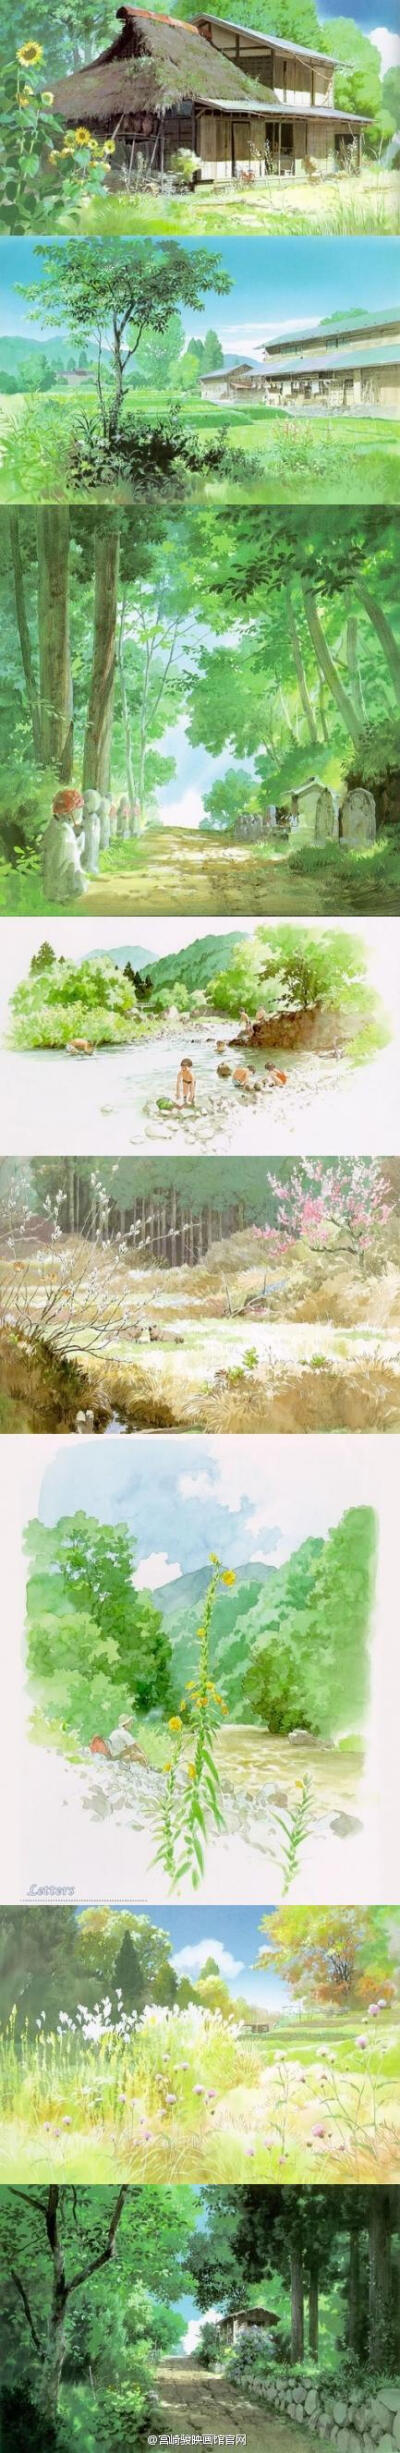 男鹿和雄， 作为宫崎骏的御用画师，他笔下的每一副作品，都如同存在一个灵魂，虽然只是风景，但却给人一种真实的、美好的感动。